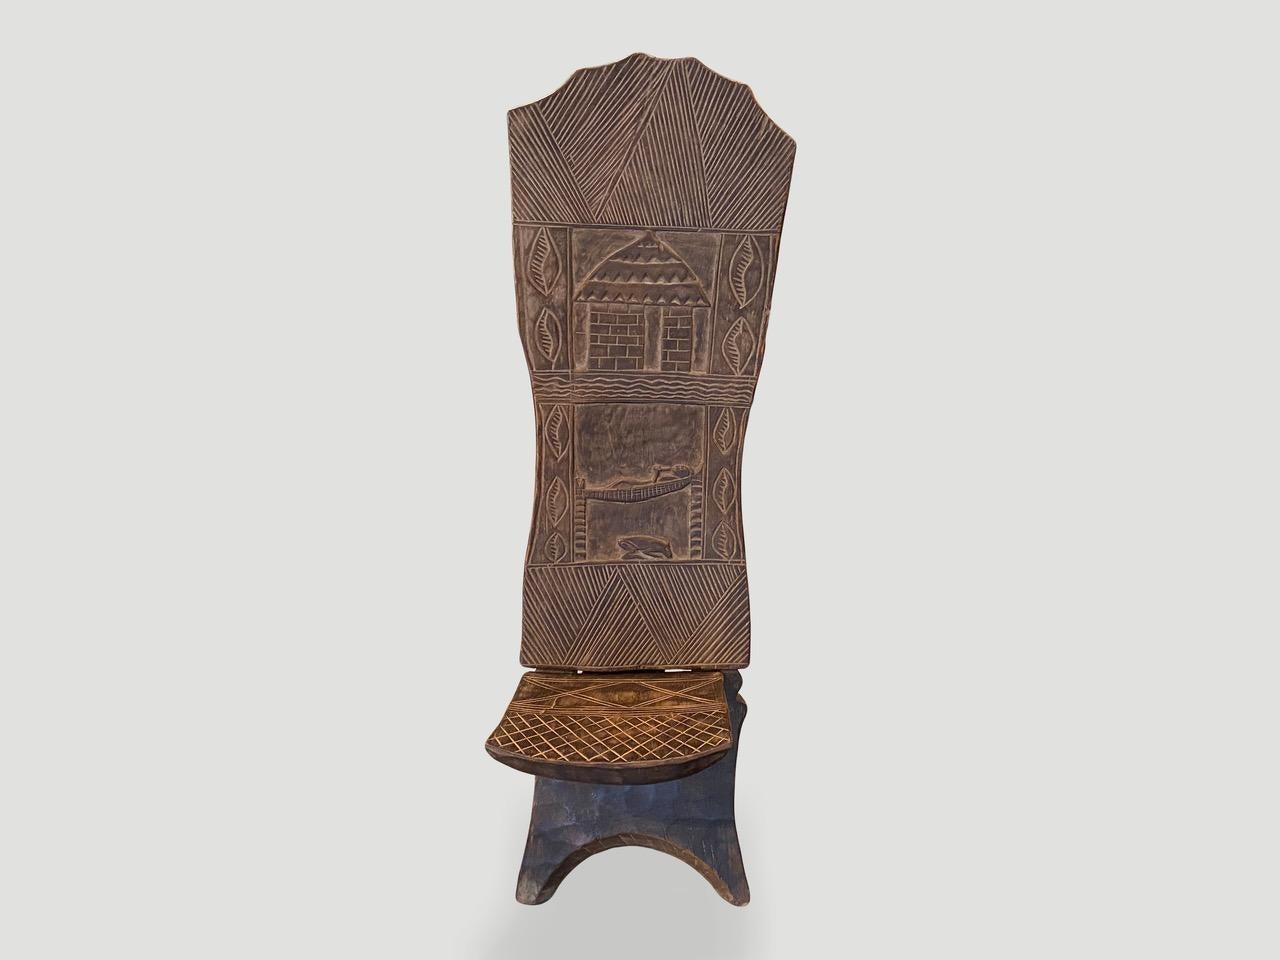 Rare chaise africaine antique sculptée à la main. Belle patine sur l'unique dossier en bois, aux multiples motifs. Cette chaise pliante est fabriquée à partir d'une seule pièce de bois ébéniste d'Afrique de l'Ouest. Également appelée chaise de